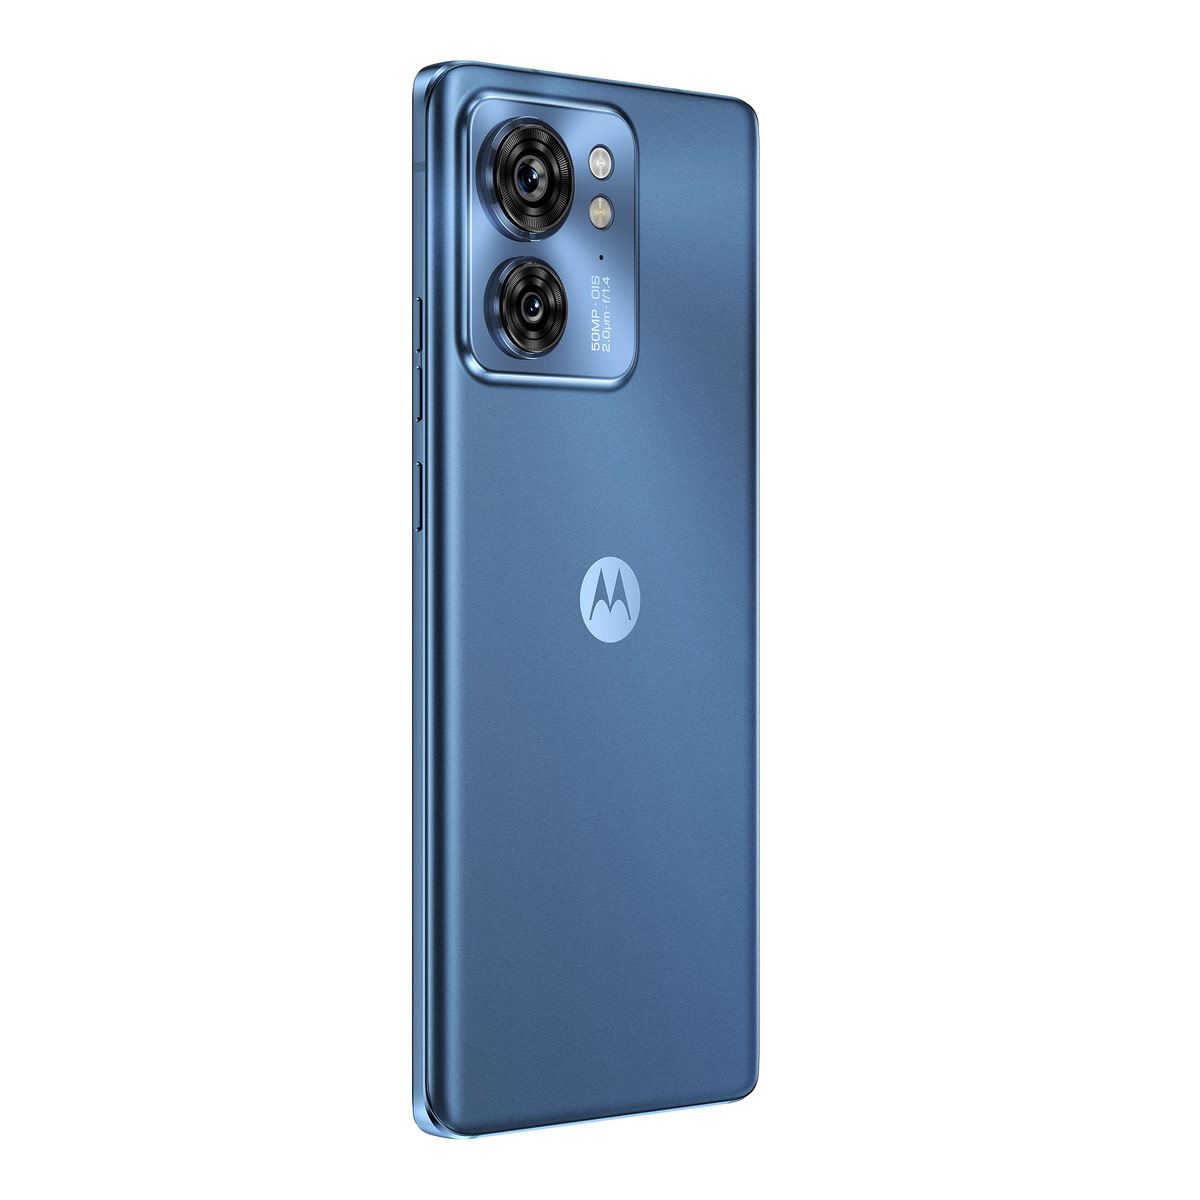 Motorola Edge 30 Pro 5G - Comprar en VEZOR ELECTRONICA